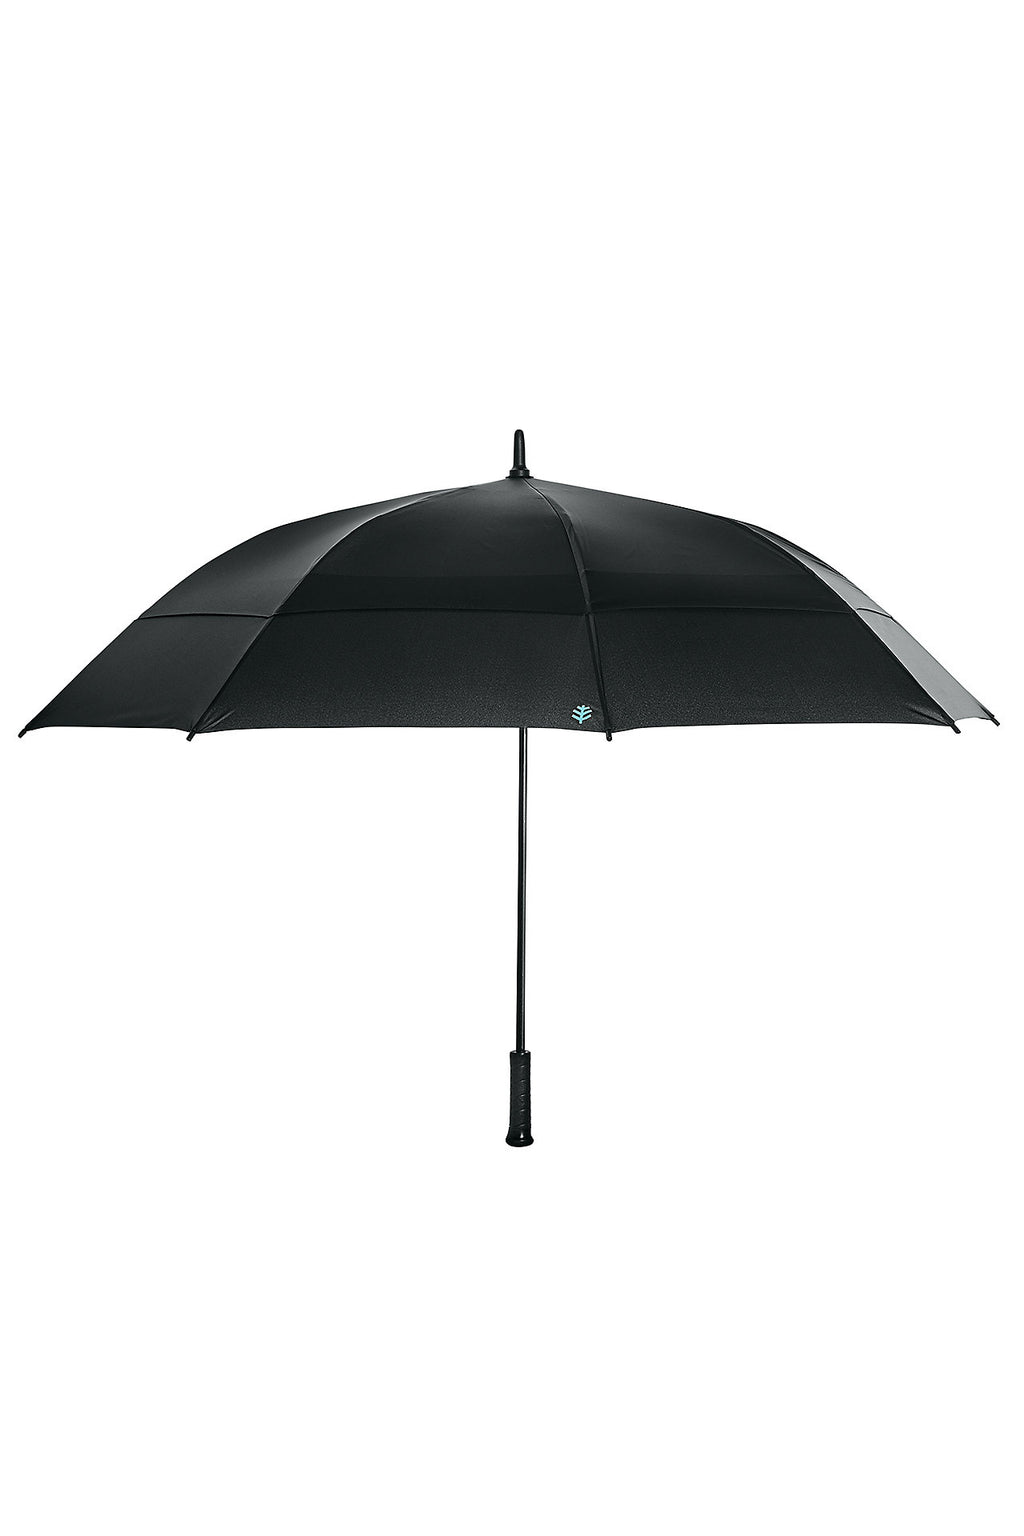 upf boutique-parapluie de golf noir-upf-50